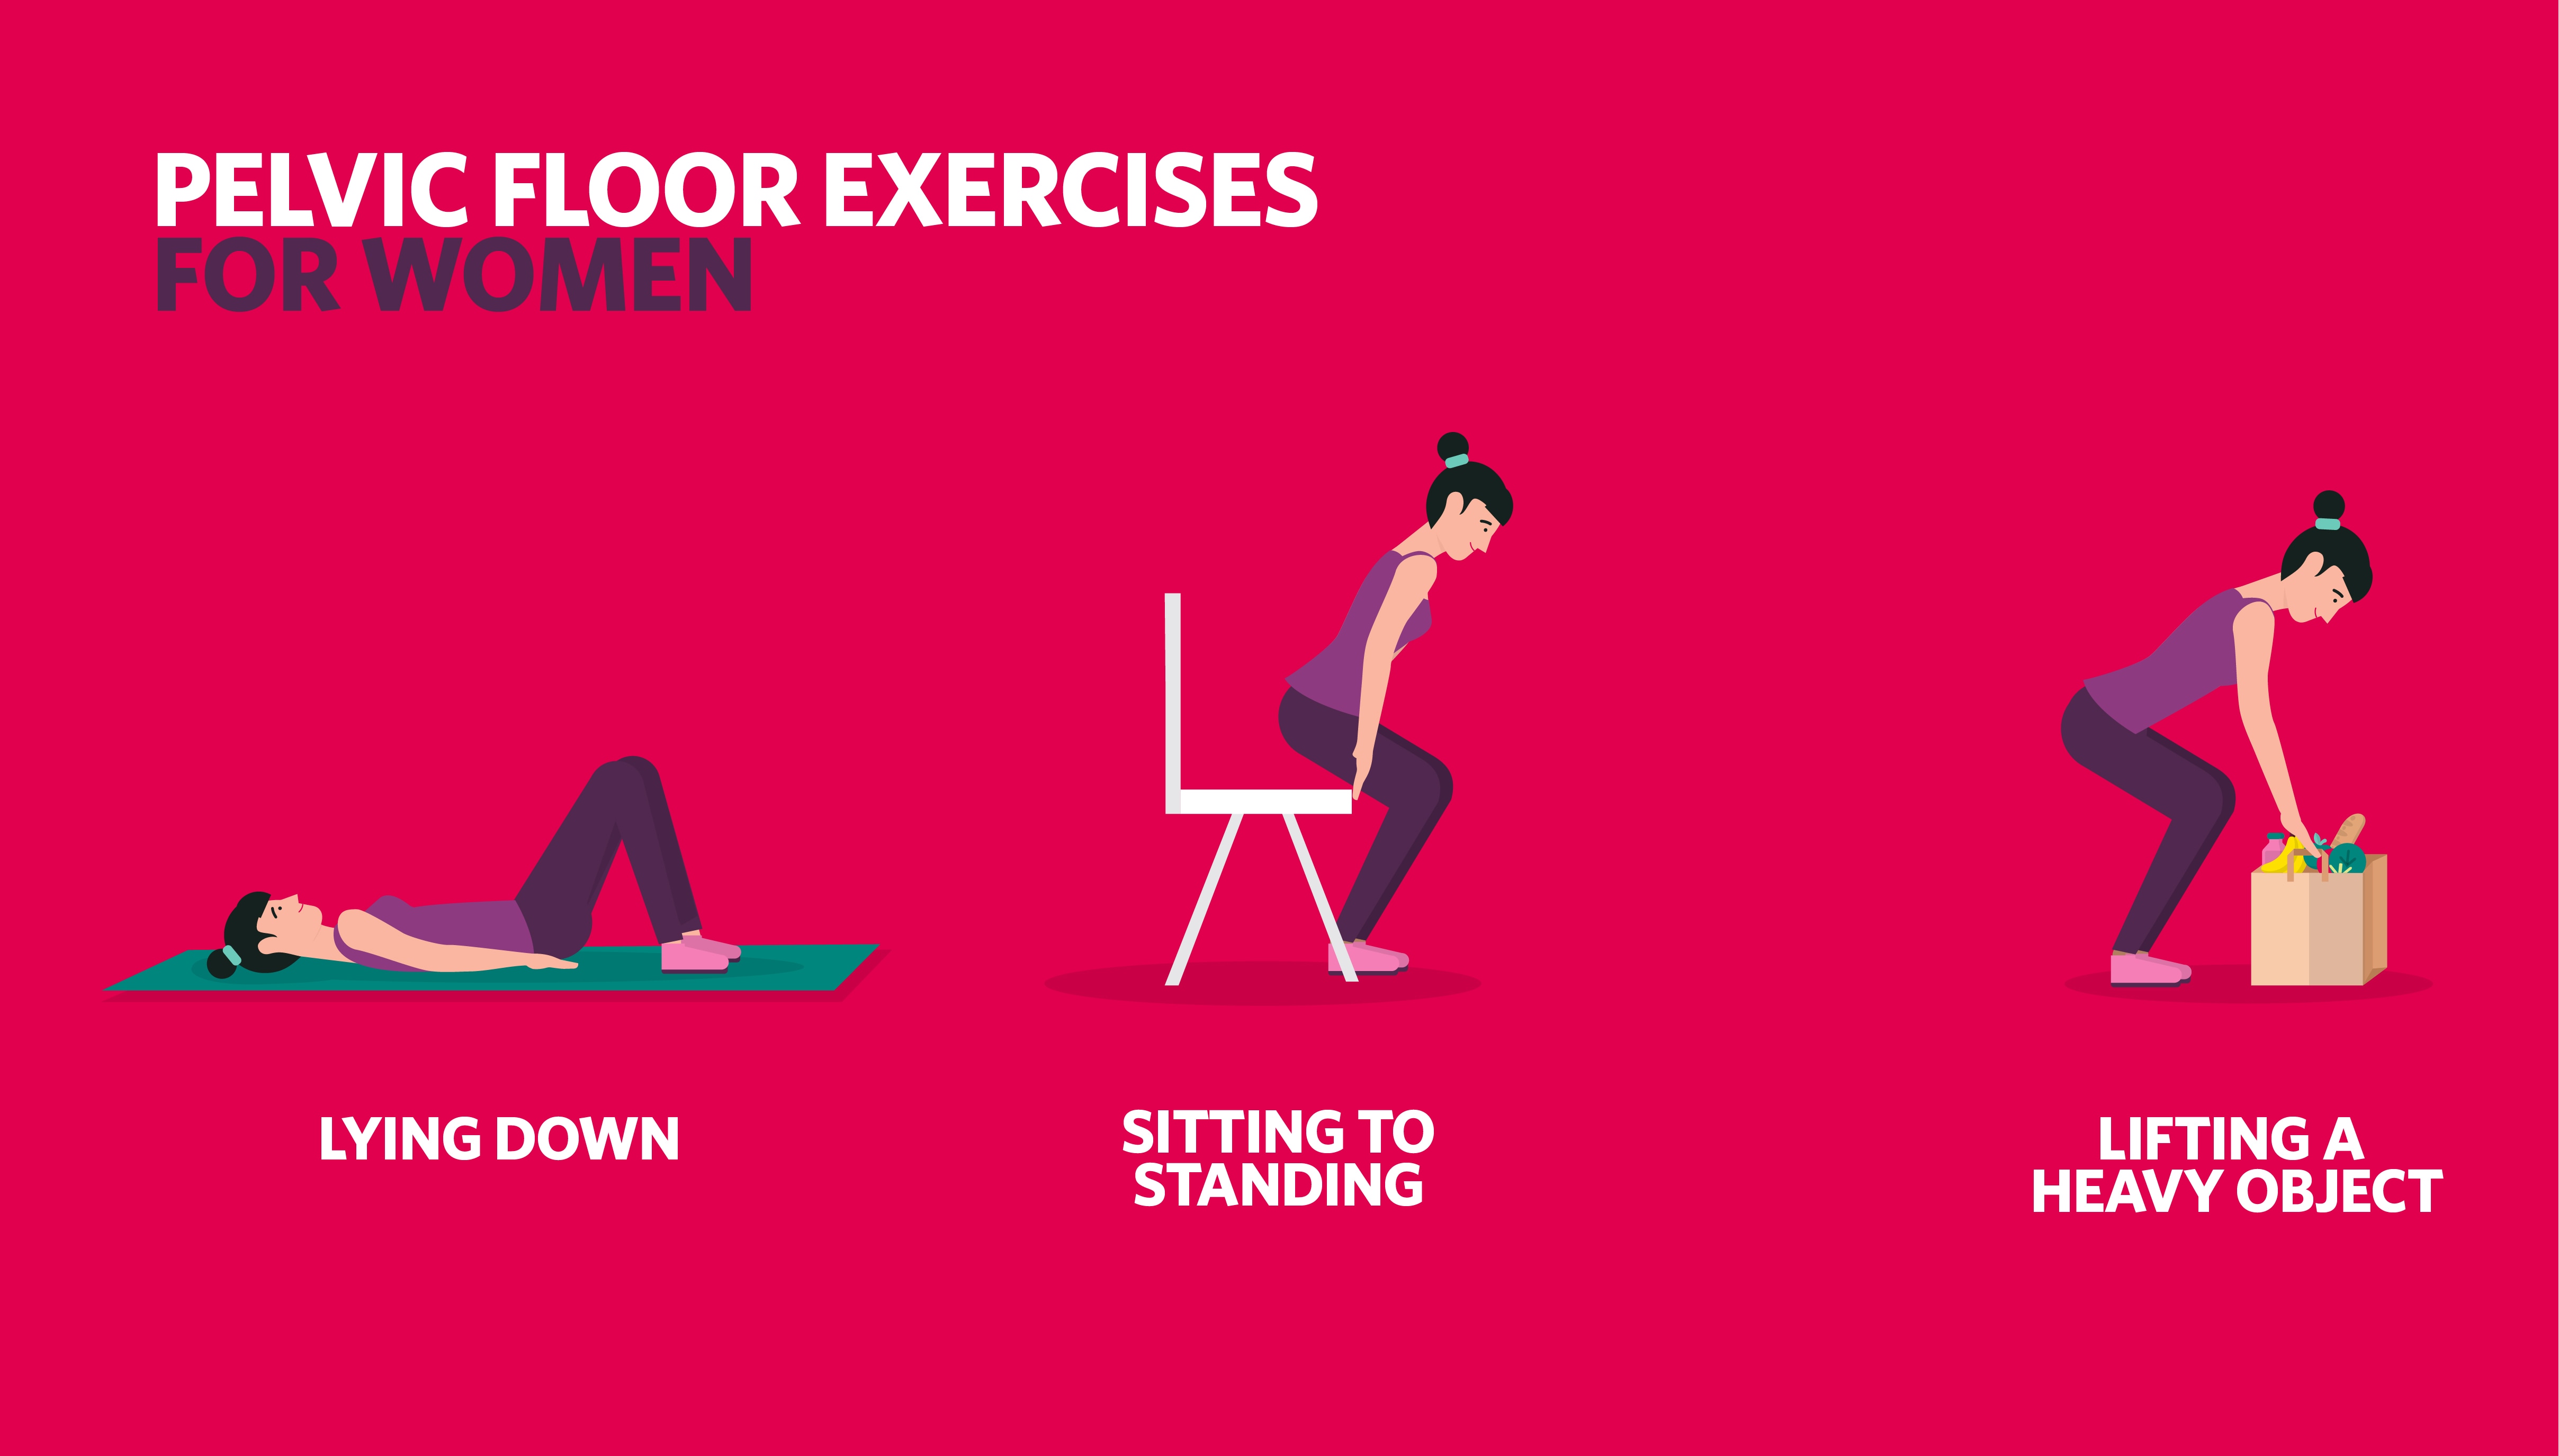 Illustration of pelvic floor exercises for women